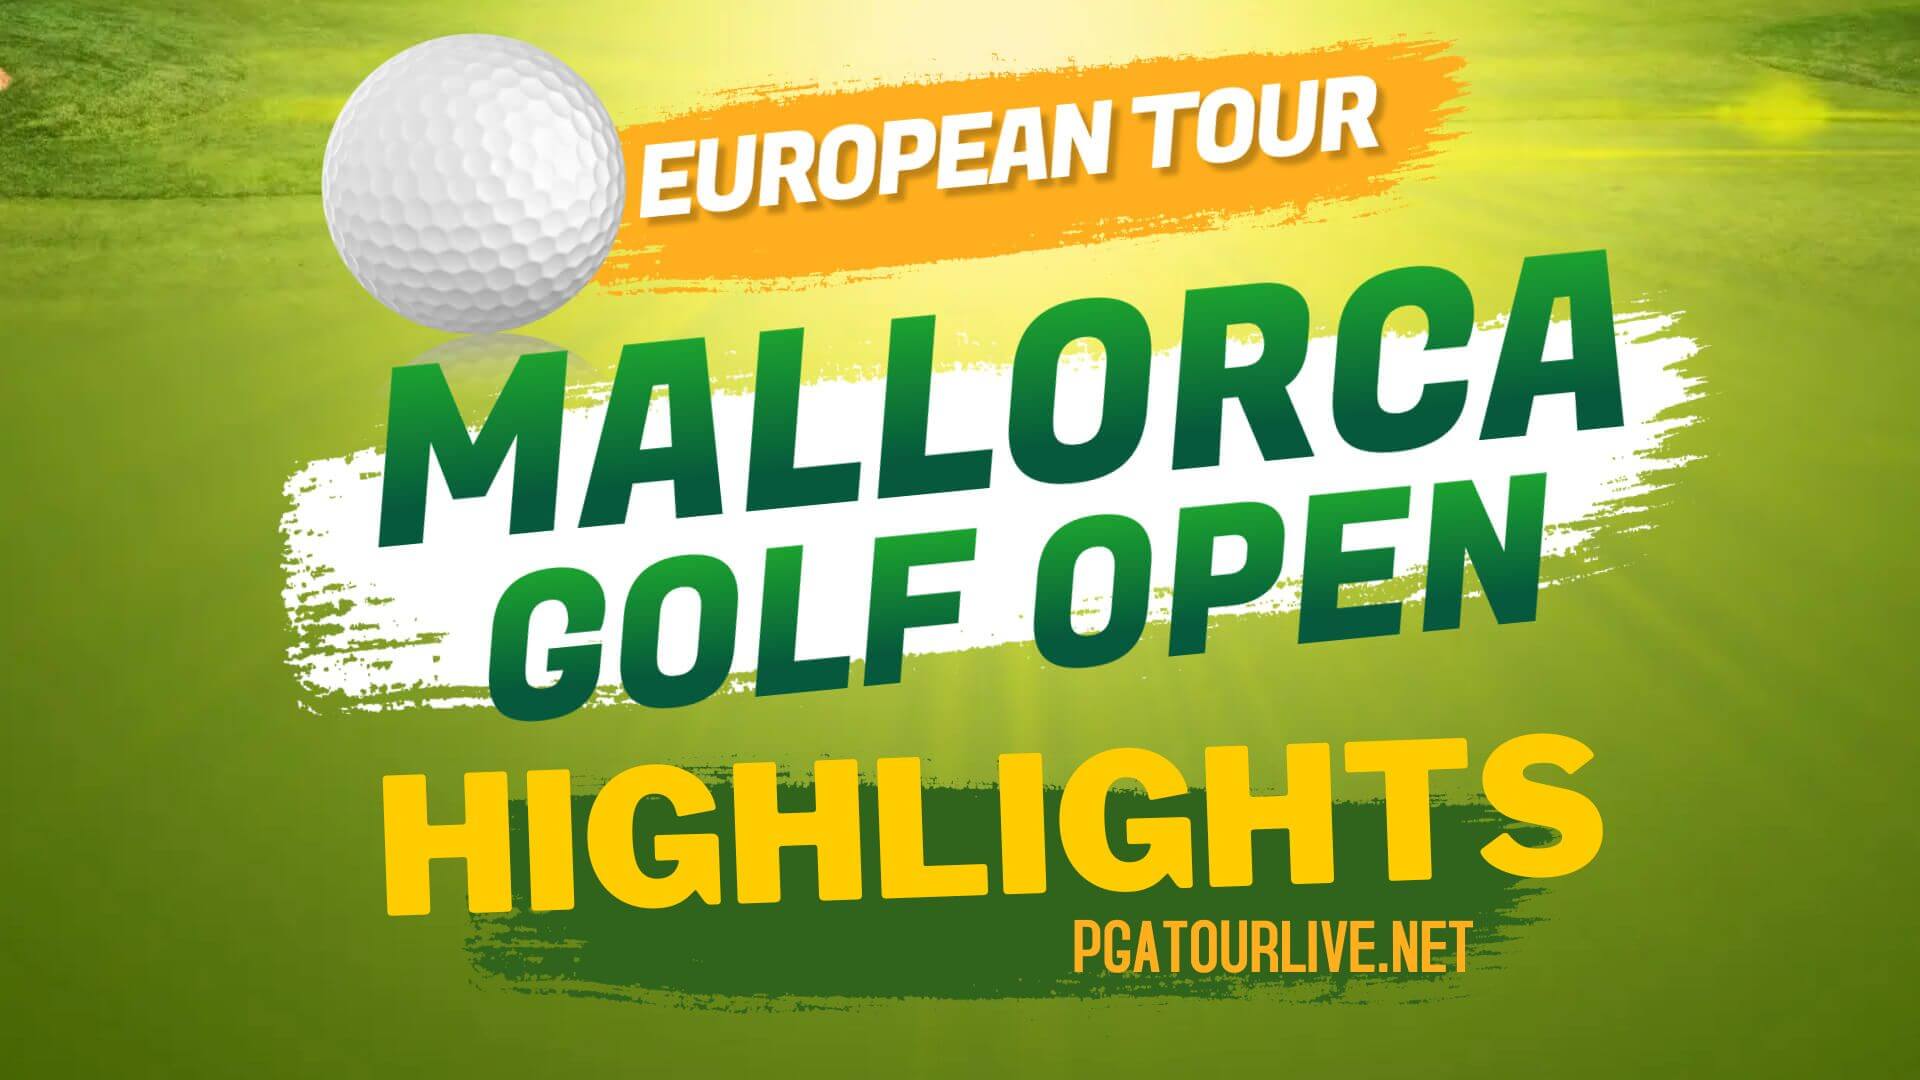 Mallorca Golf Open Highlights Day 2 European Tour 2022